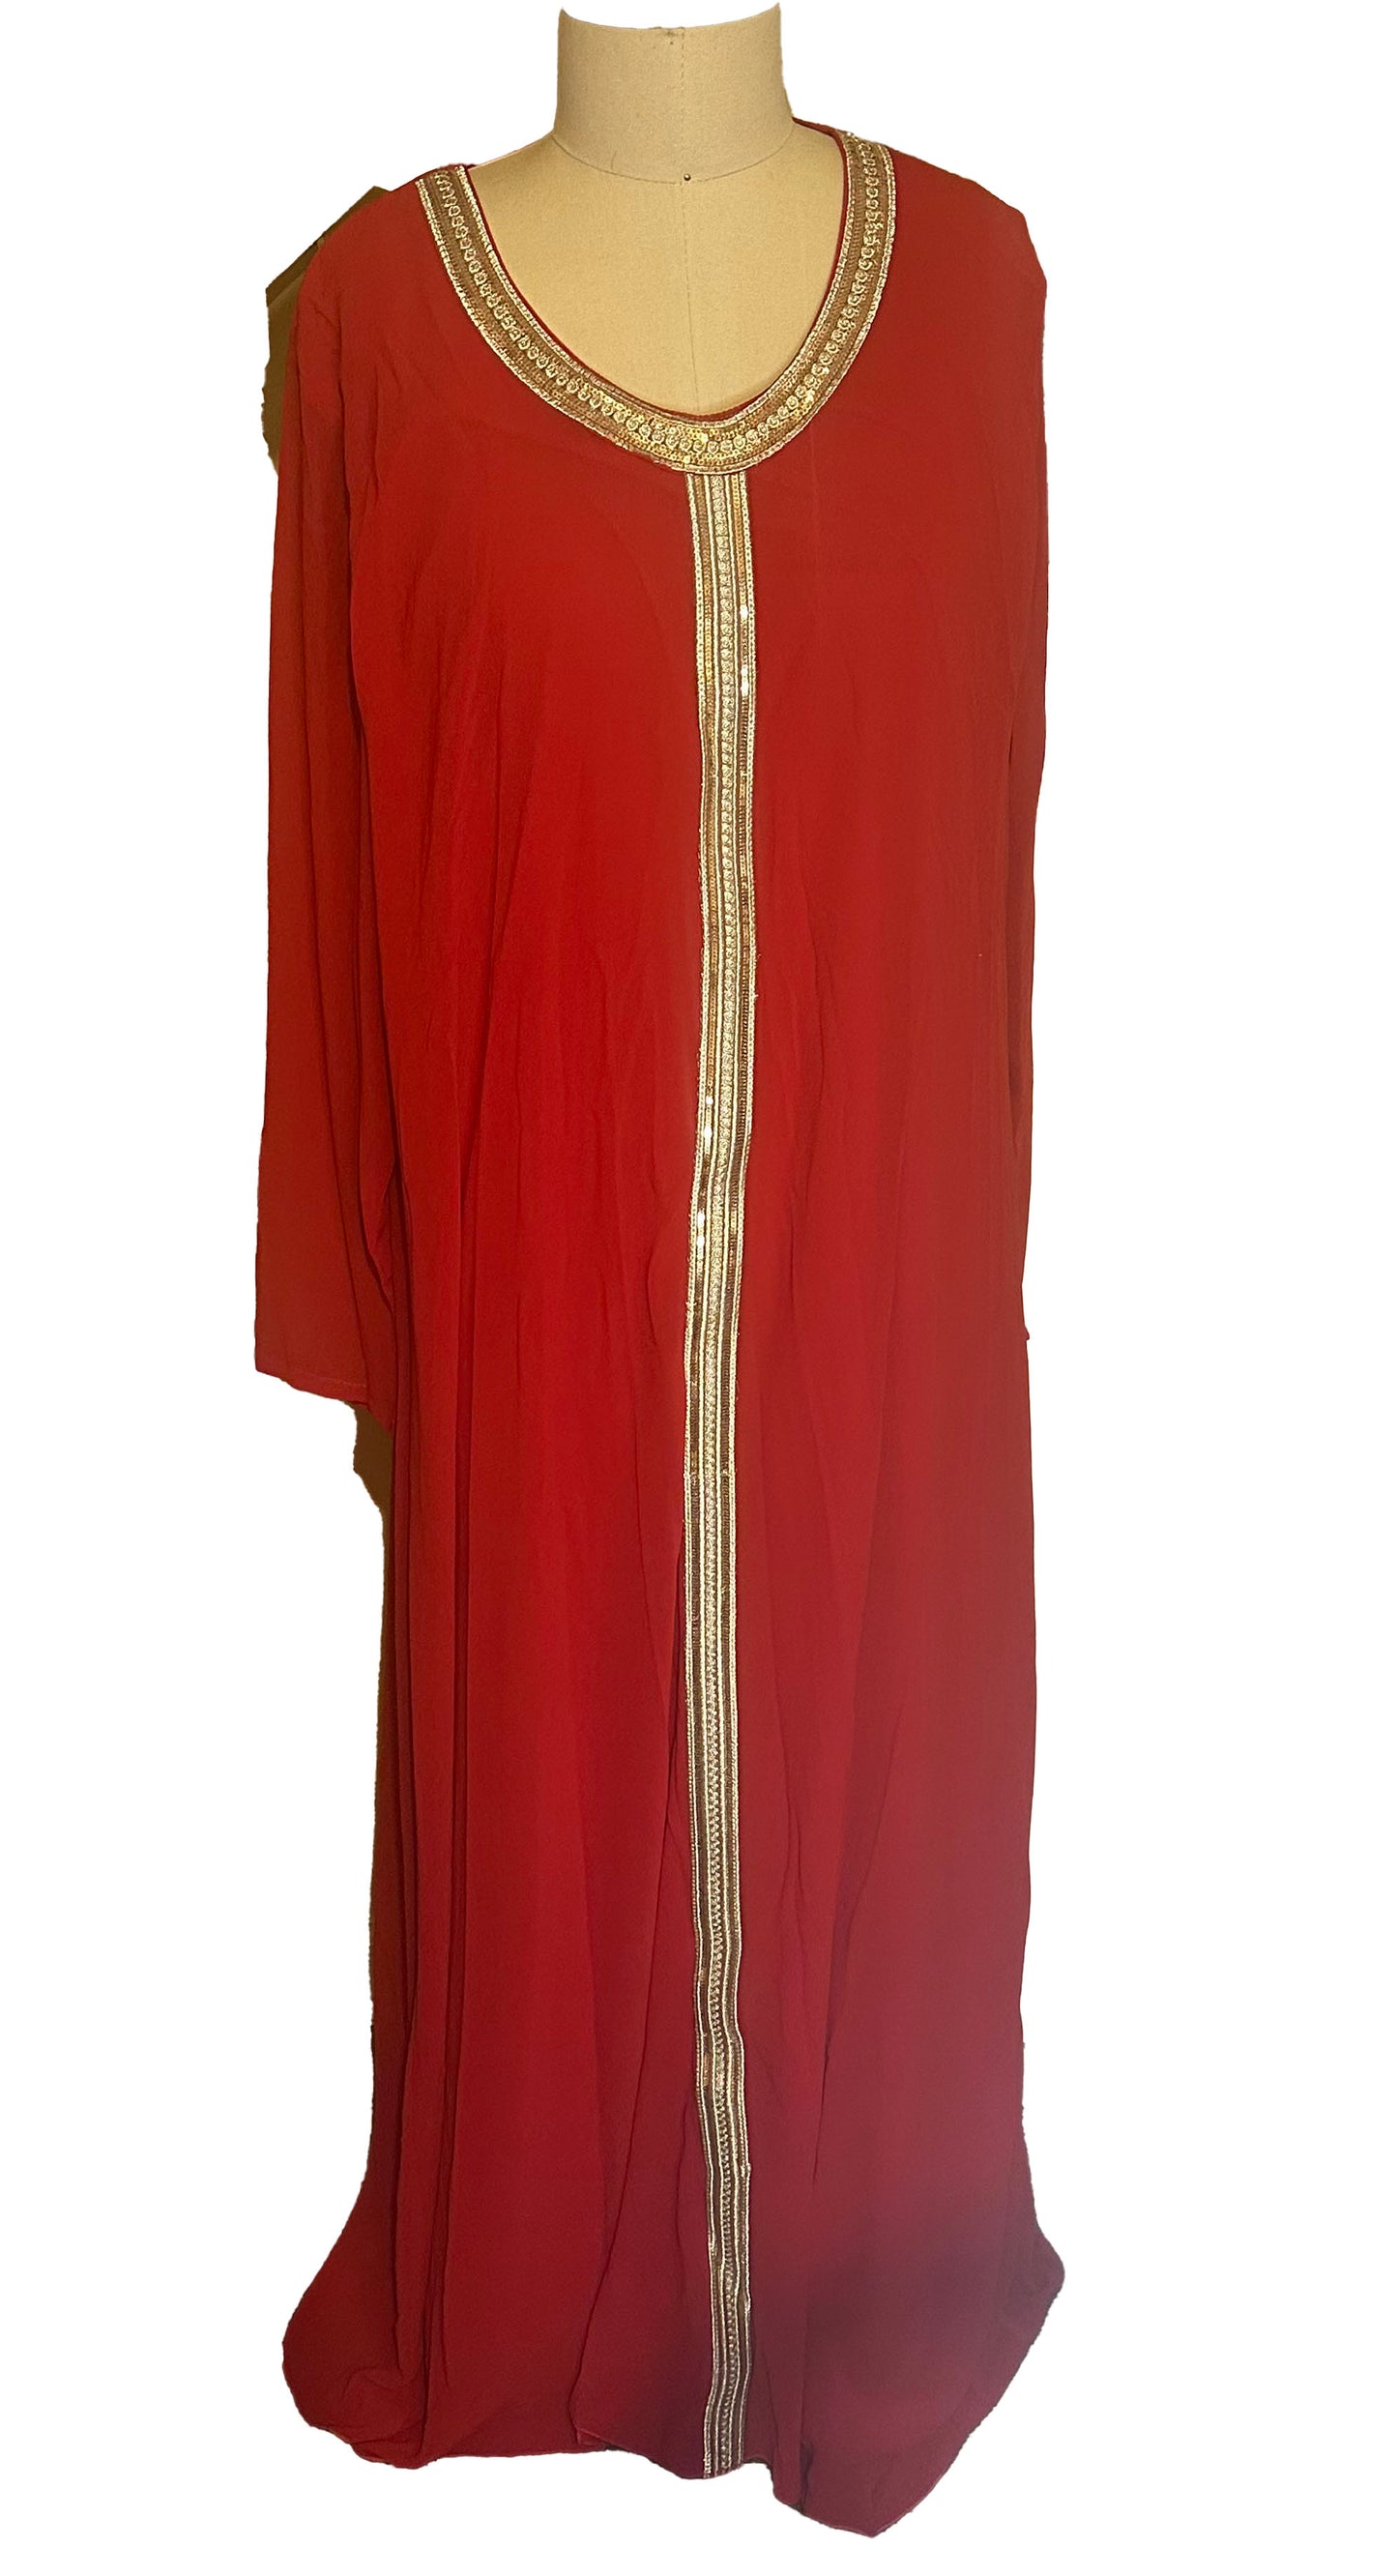 Egyptian Dress 2 piece with Waist strap.